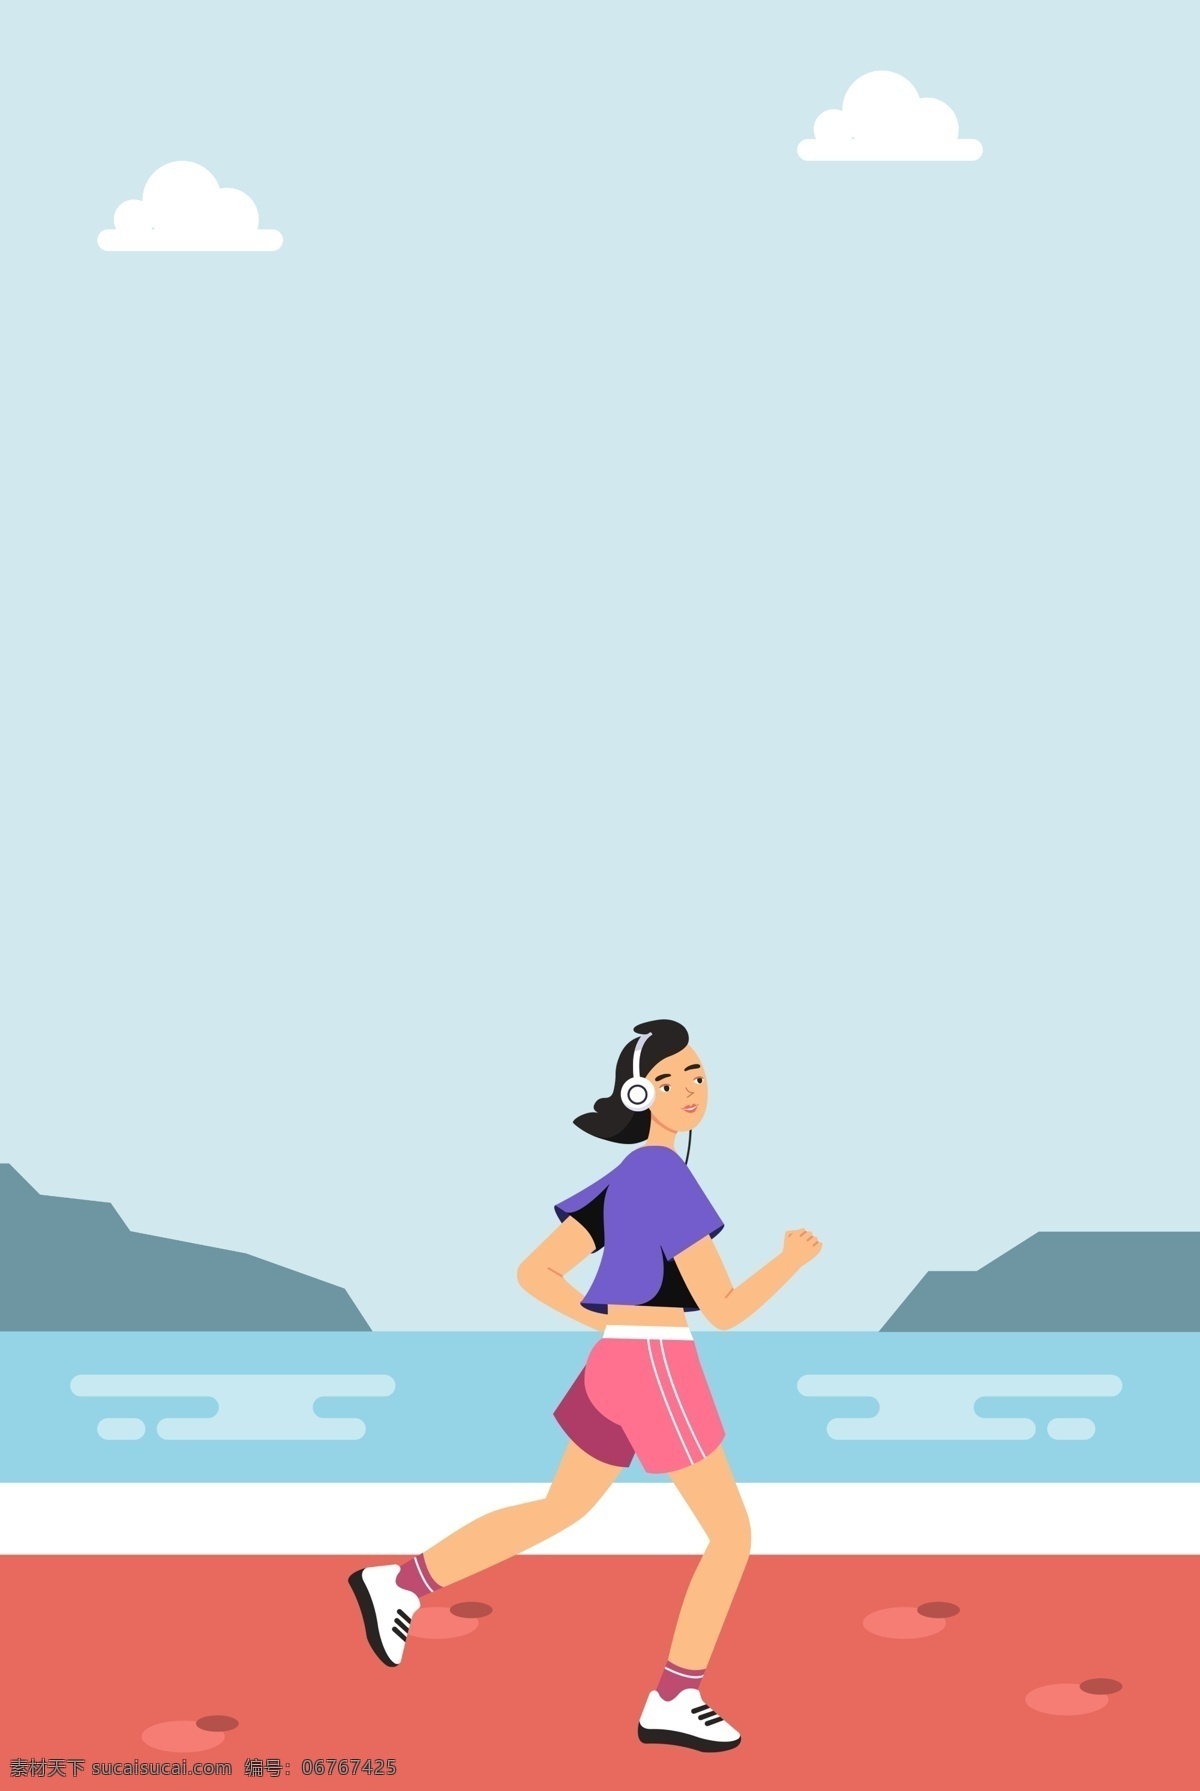 蓝色 清新 扁平化 奔跑 广告 背景 跑步 运动 健康 健身 海报背景